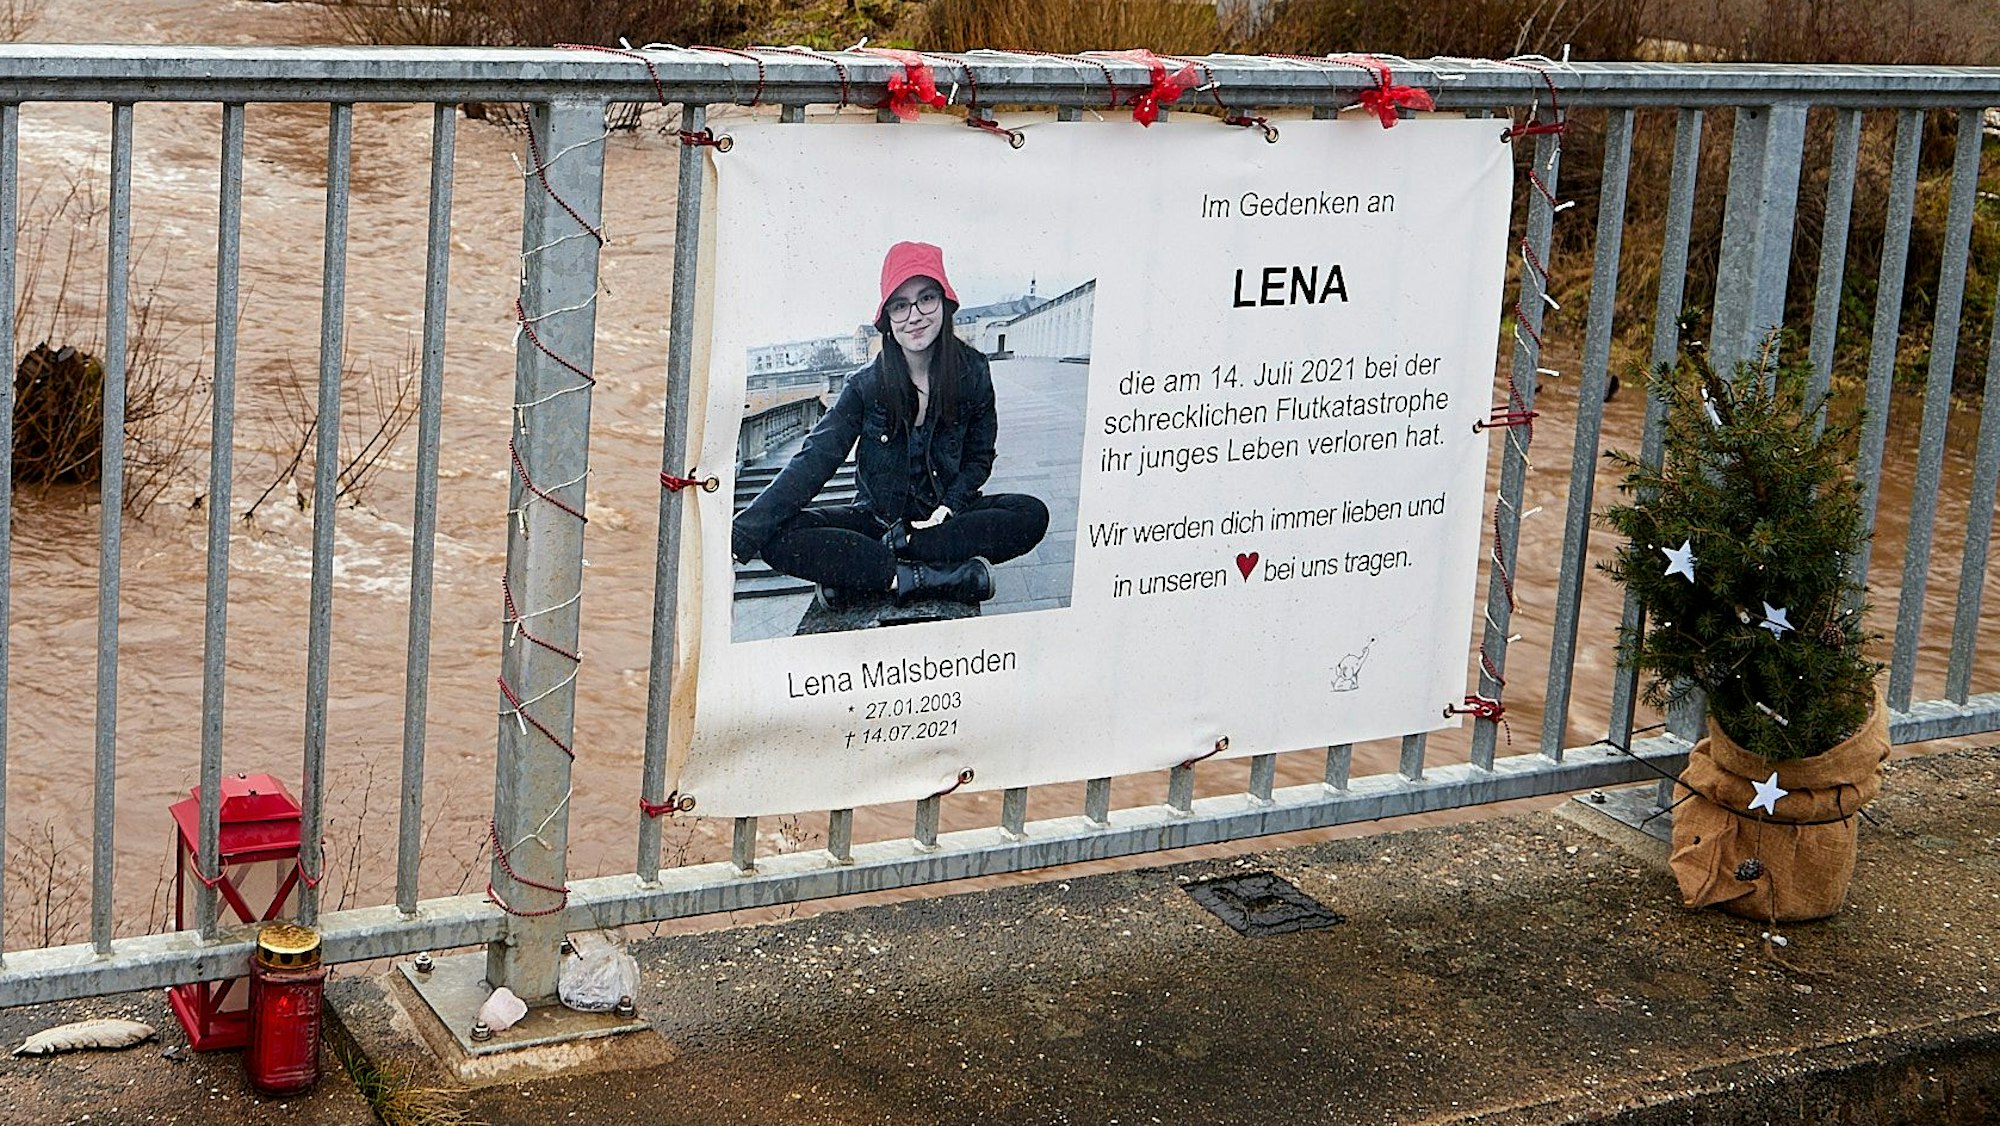 An einem Brückengeländer hängt ein Transparent mit dem Foto einer jungen Frau. Es erinnert an Lena Malsbenden, die im Alter von 18 Jahren bei der Flutkatastrophe 2021 ums Leben gekommen ist.